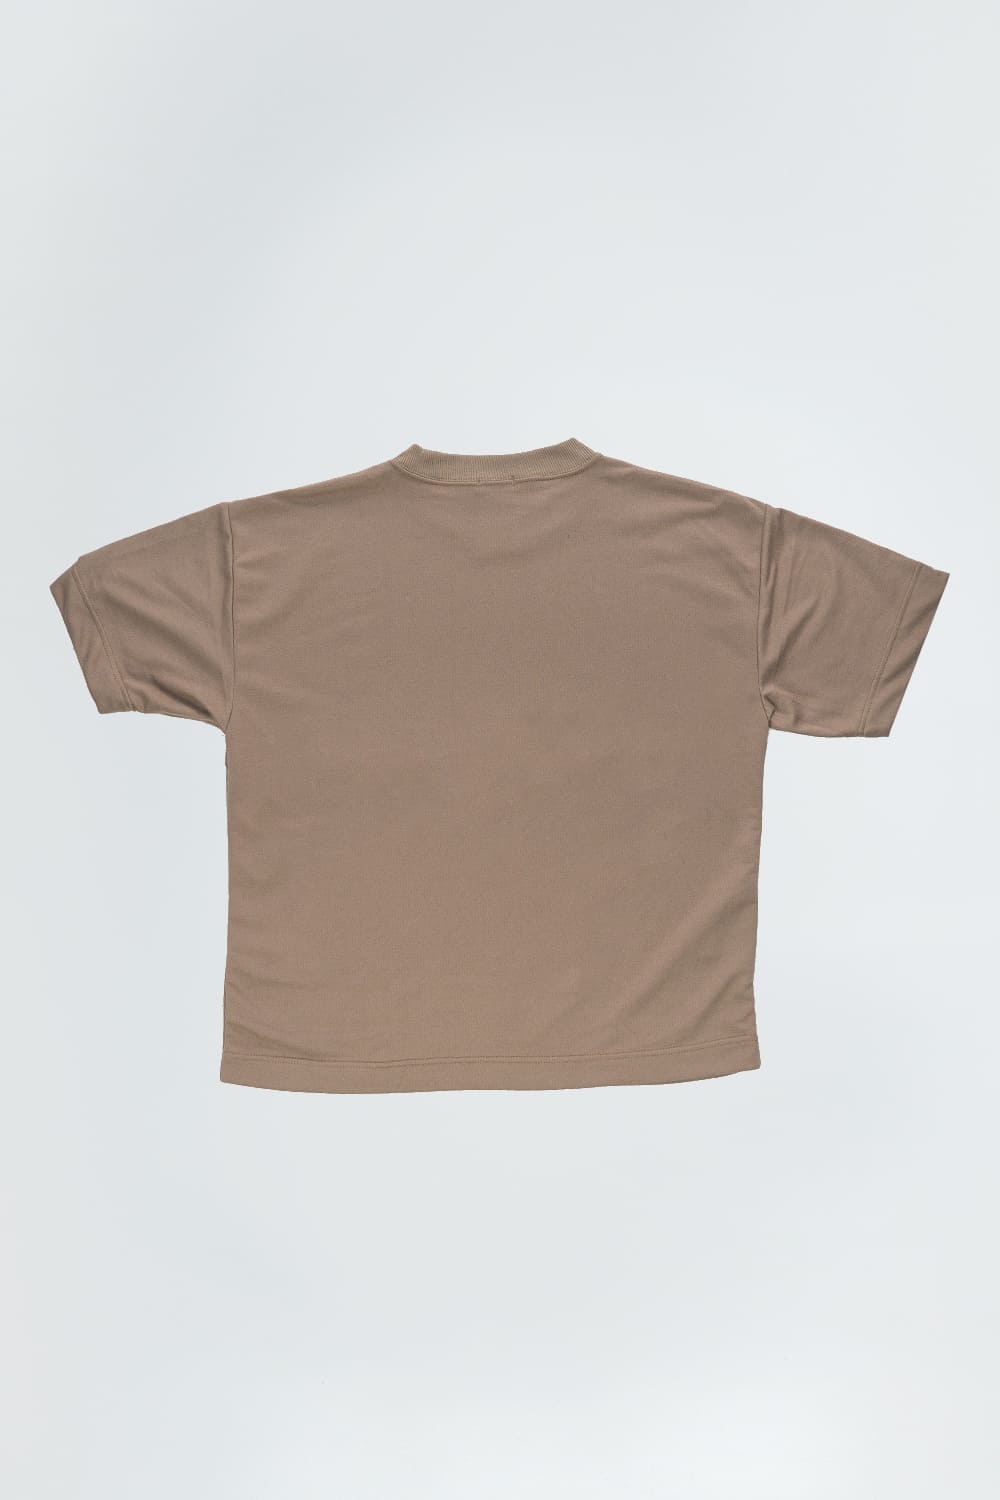 BCO Basics t-shirt - 8291 KHAKI